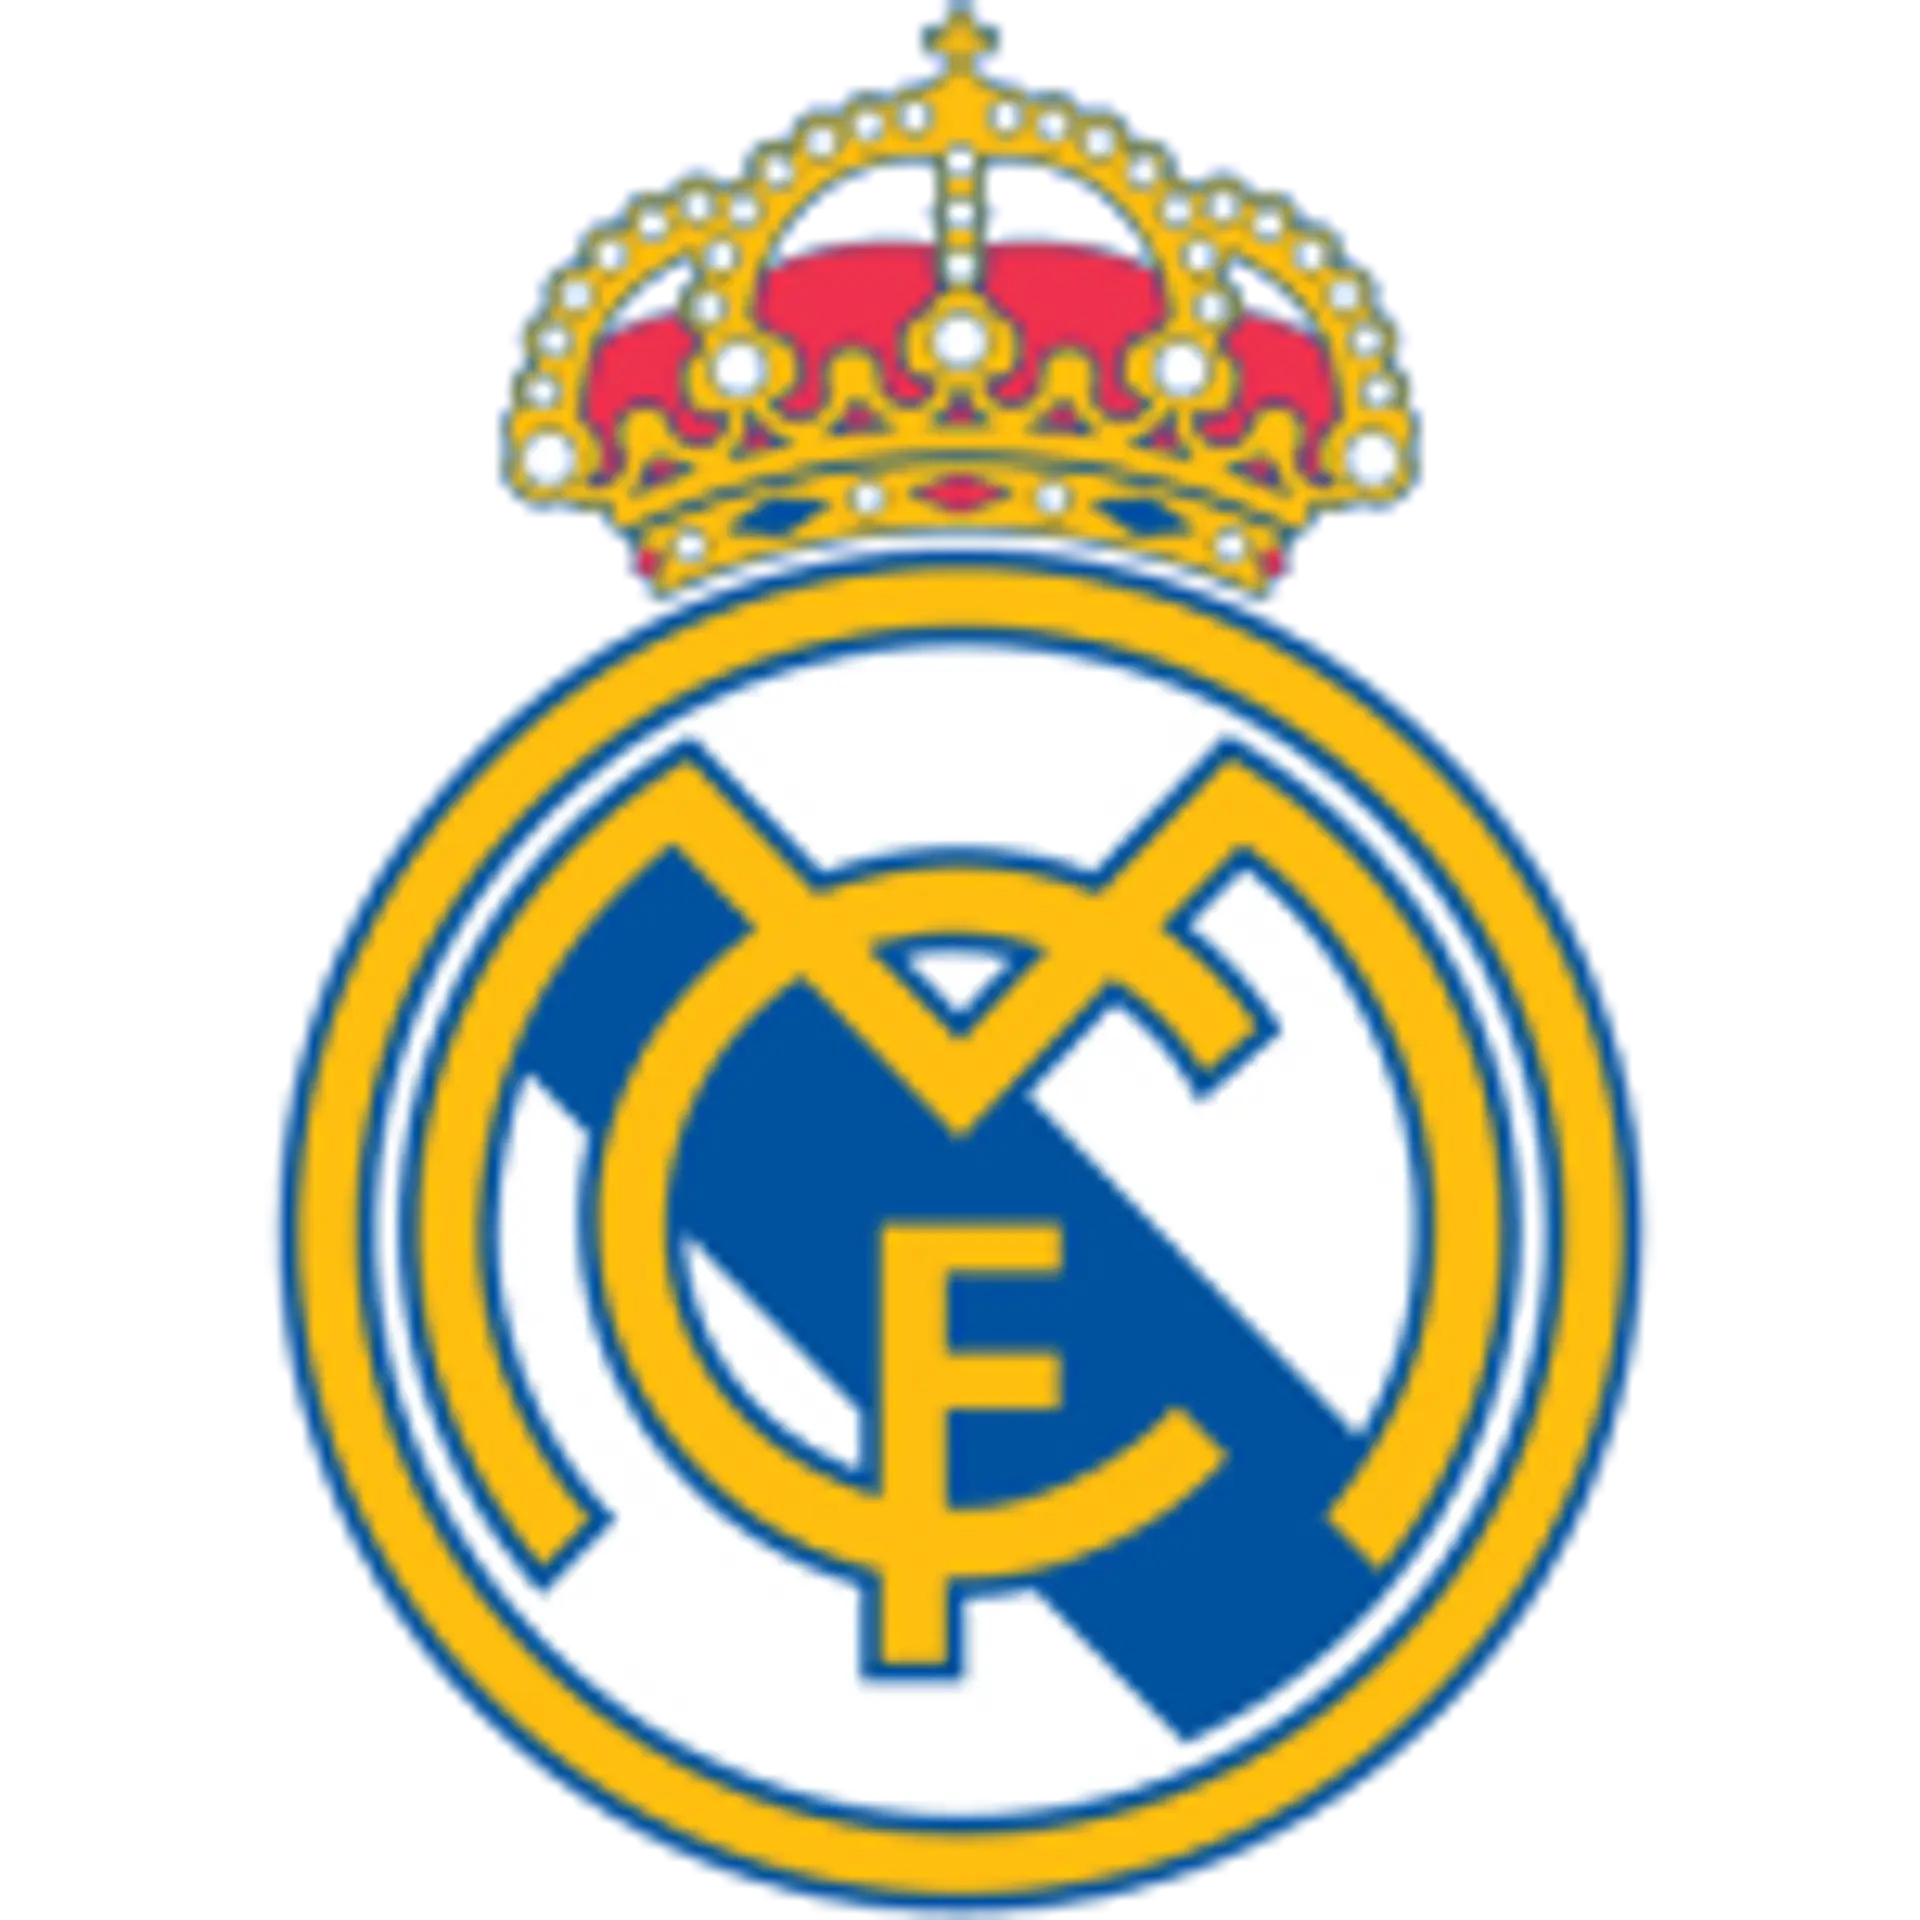 Real Madrid-Castilla